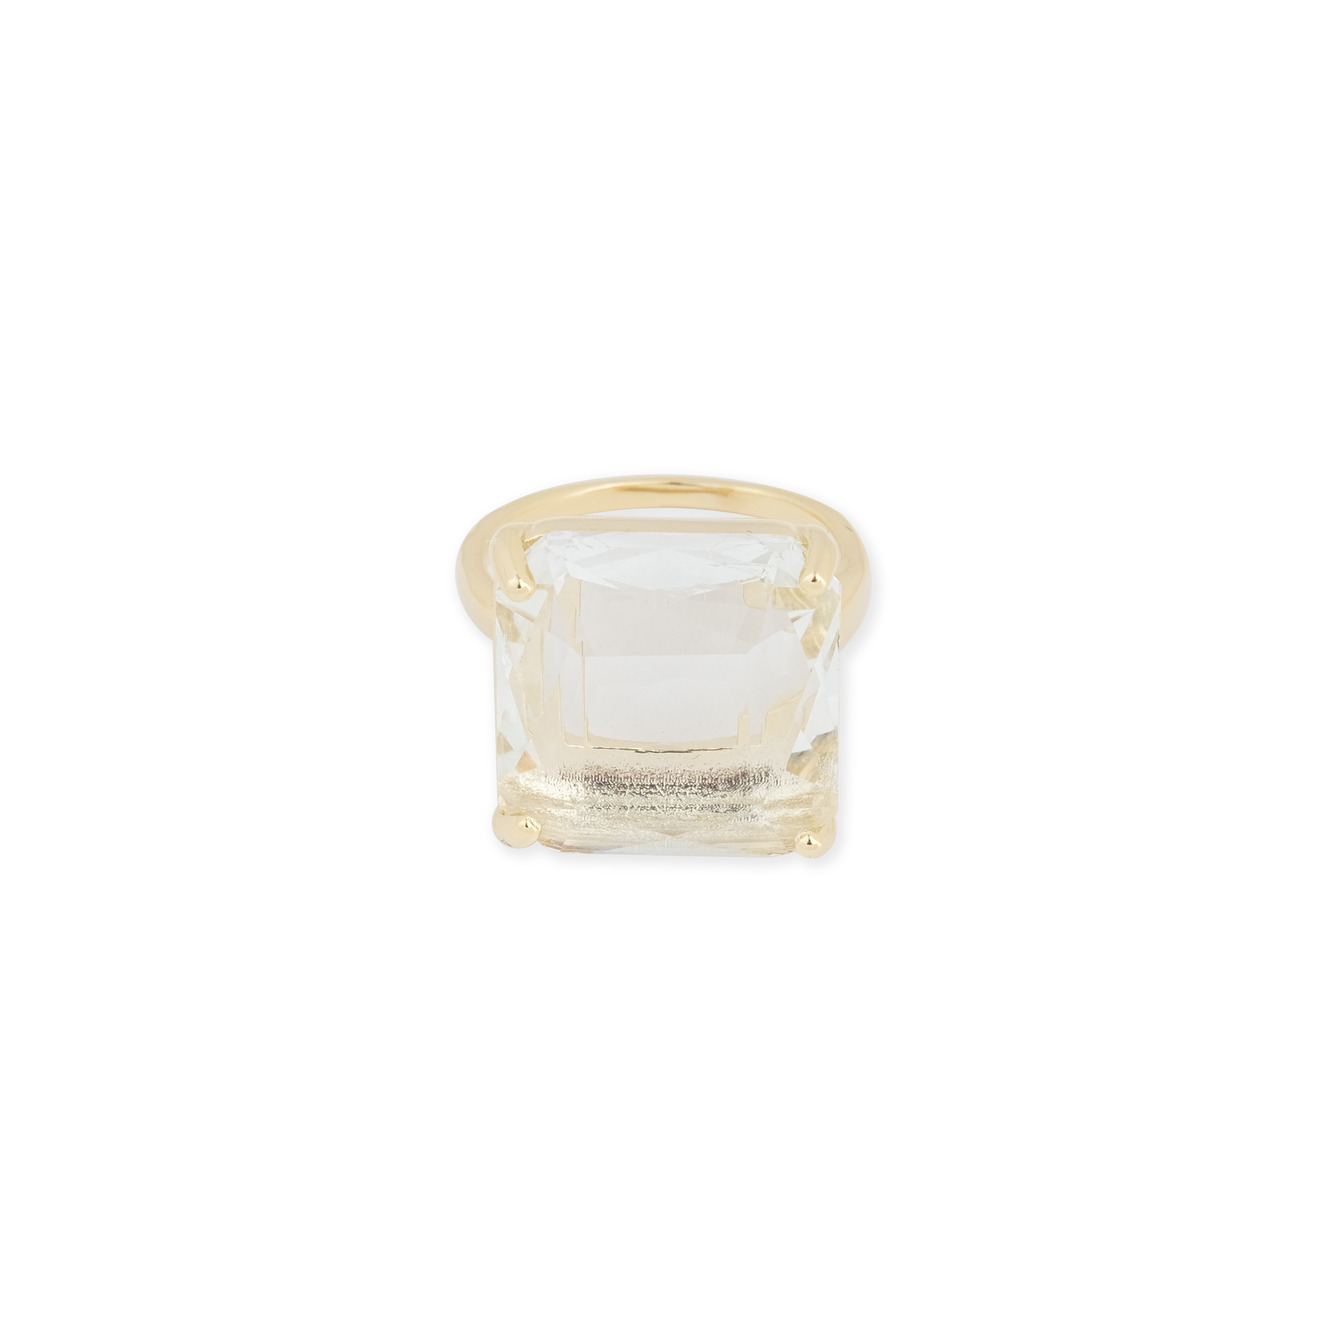 Herald Percy Золотистое кольцо с квадратным кристаллом